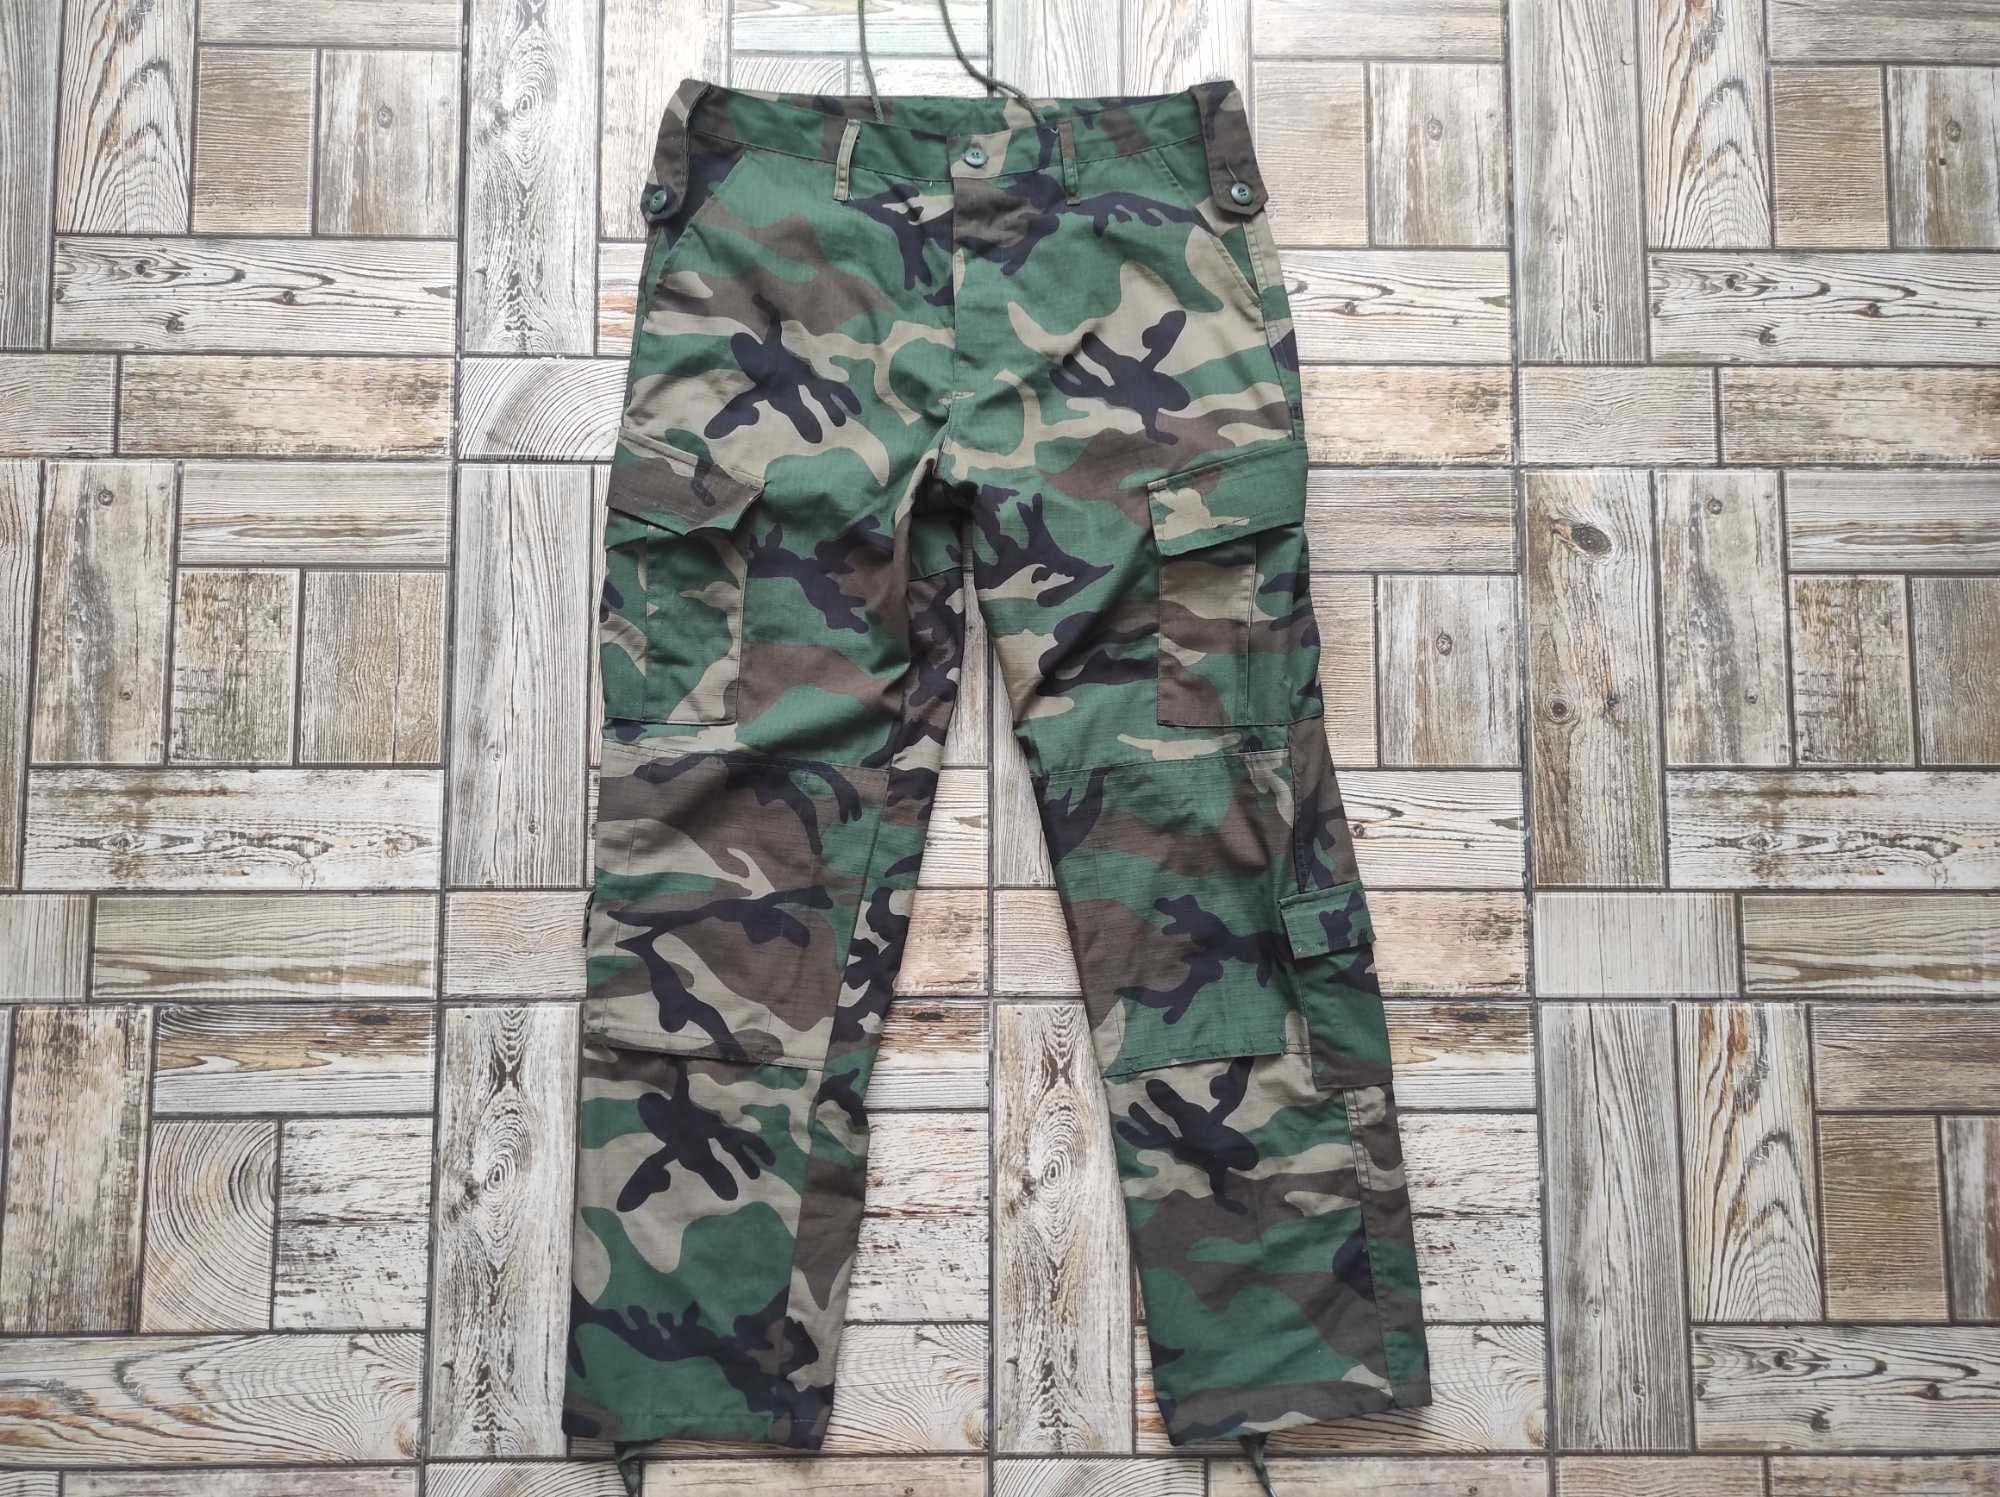 Камуфляжные штаны Trouser army combat uniform + карманы для защиты